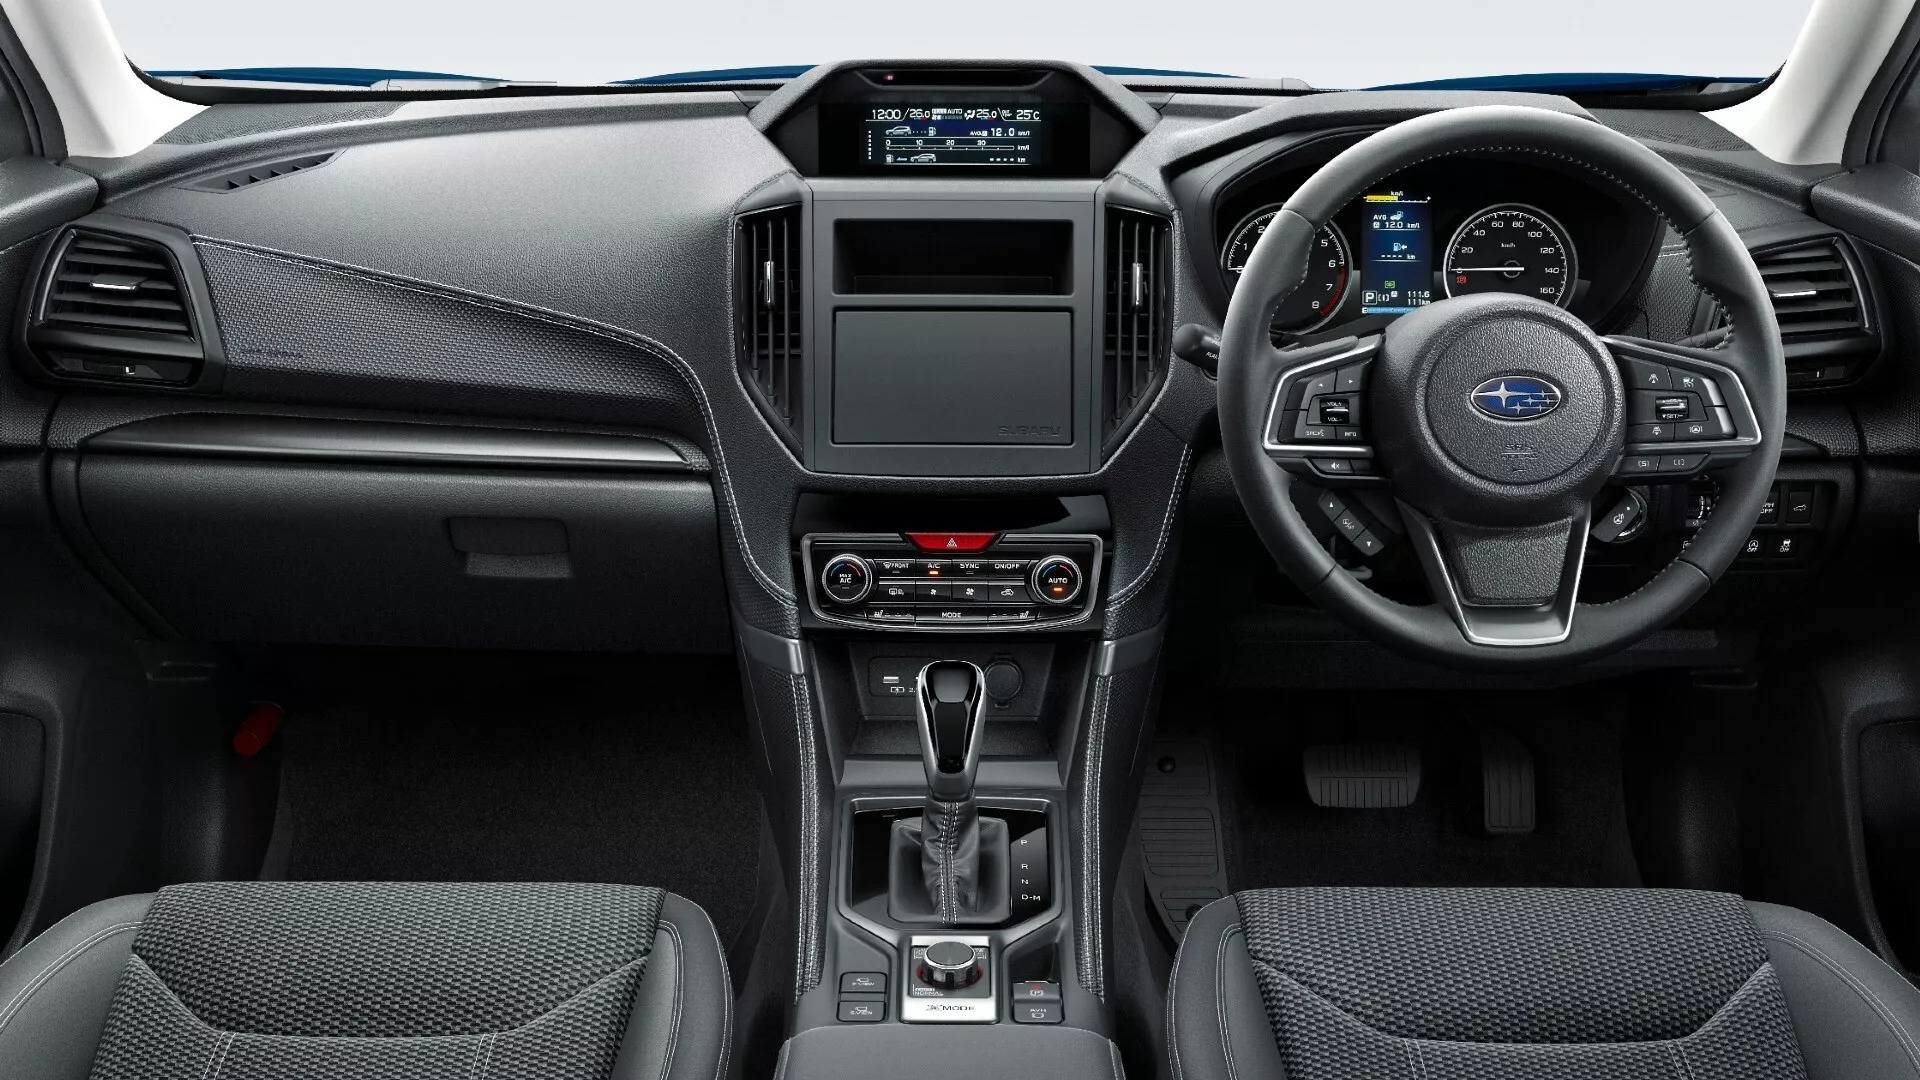 Subaru Forester bản đặc biệt ra mắt: Giá quy đổi 600 triệu nhưng không có màn hình - Ảnh 3.